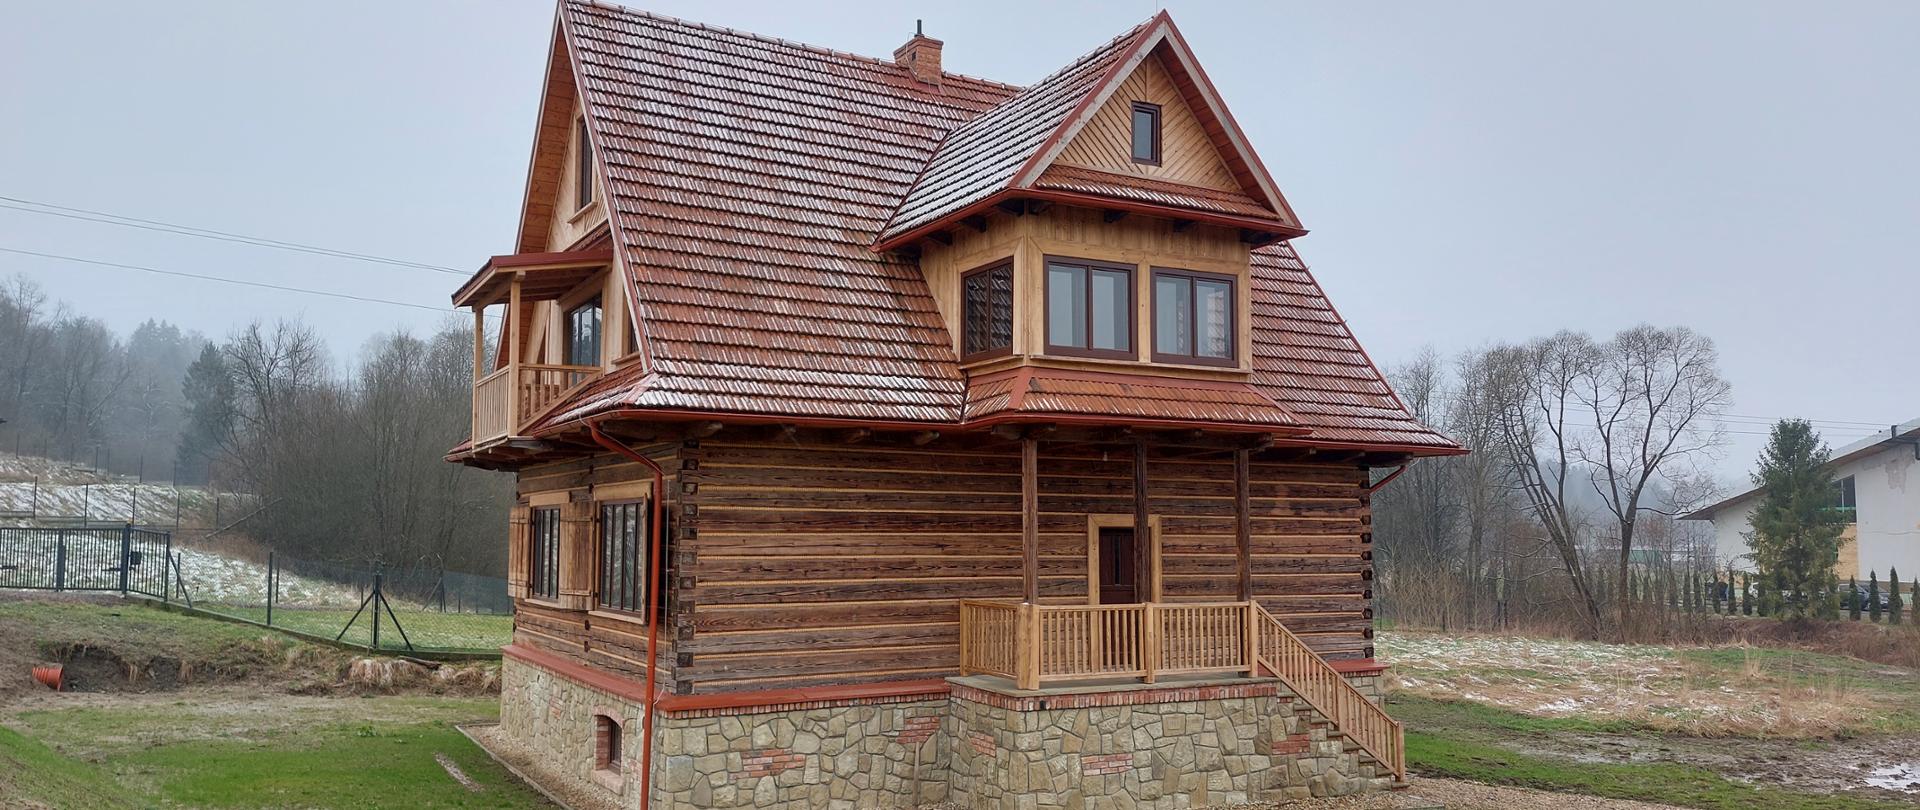 dom Jalu Kurka przeniesiony na nowe miejsce w Naprawie, odnowione i wyczyszczone elementy konstrukcyjne budynku